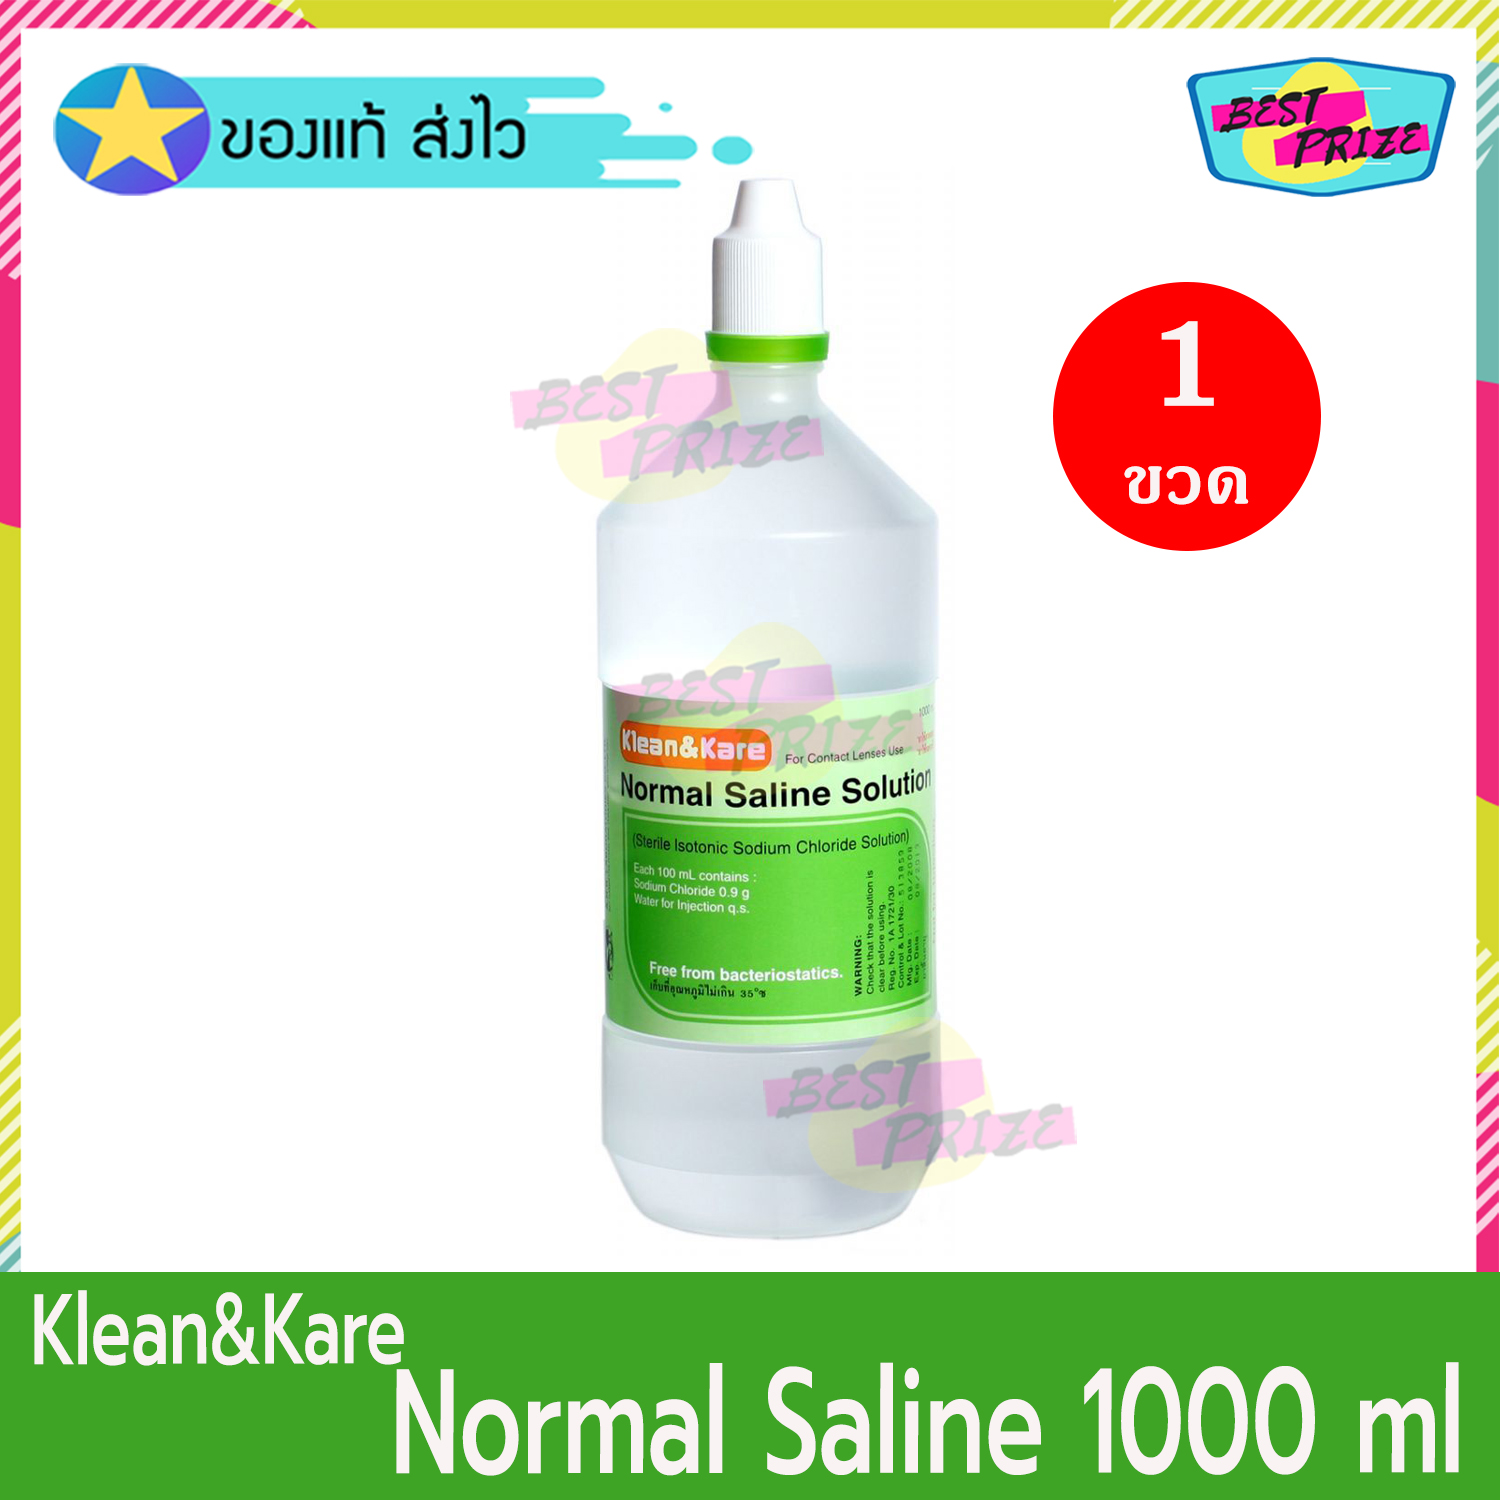 Klean&Kare Normal Saline ANB ขนาด 1000 ml. (จำนวน 1 ขวด) Klean & Kare คลีน แอนด์ แคร์ นอร์มอล ซาไลน์ 1000 มล. น้ำเกลือ ล้างแผล ล้างจมูก ล้างคอนแทคเลนส์ เช็ดหน้า NSS